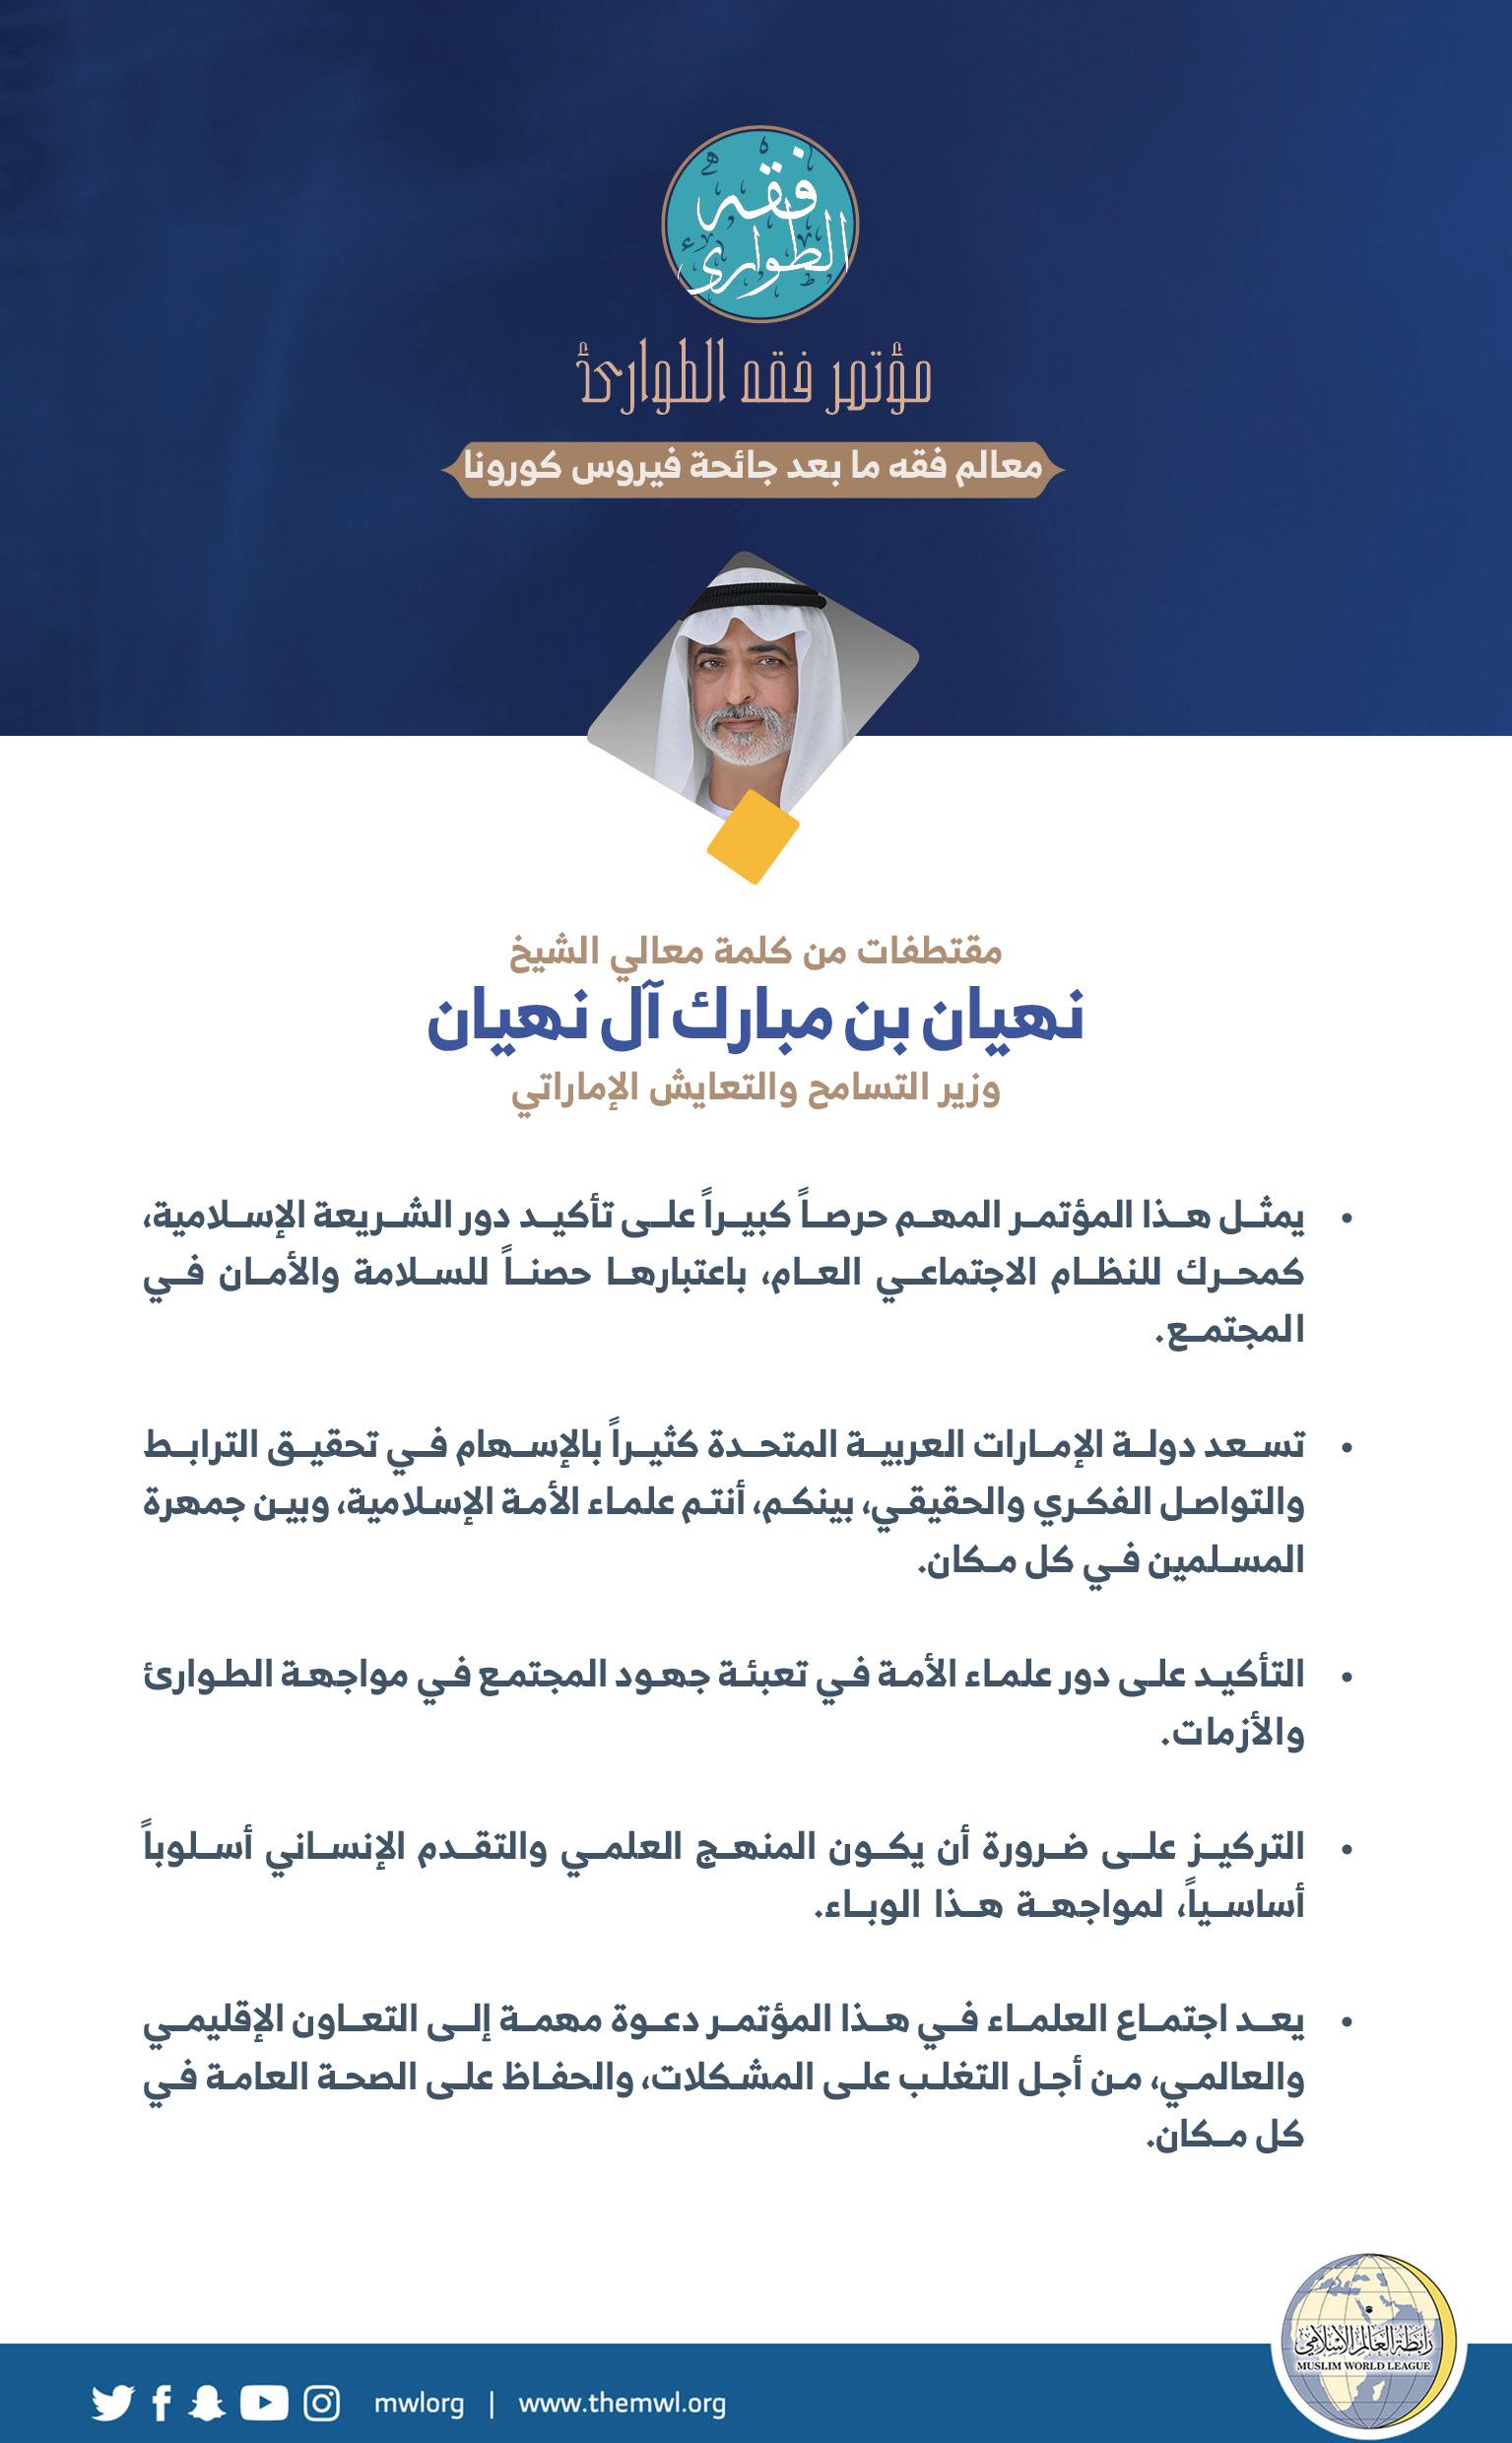 وزير التسامح والتعايش الإماراتي  ، معالي الشيخ نهيان بن مبارك آل نهيان في كلمته في الجلسة الافتتاحية لـ: ⁧‫مؤتمر فقه الطوارئ‬⁩: